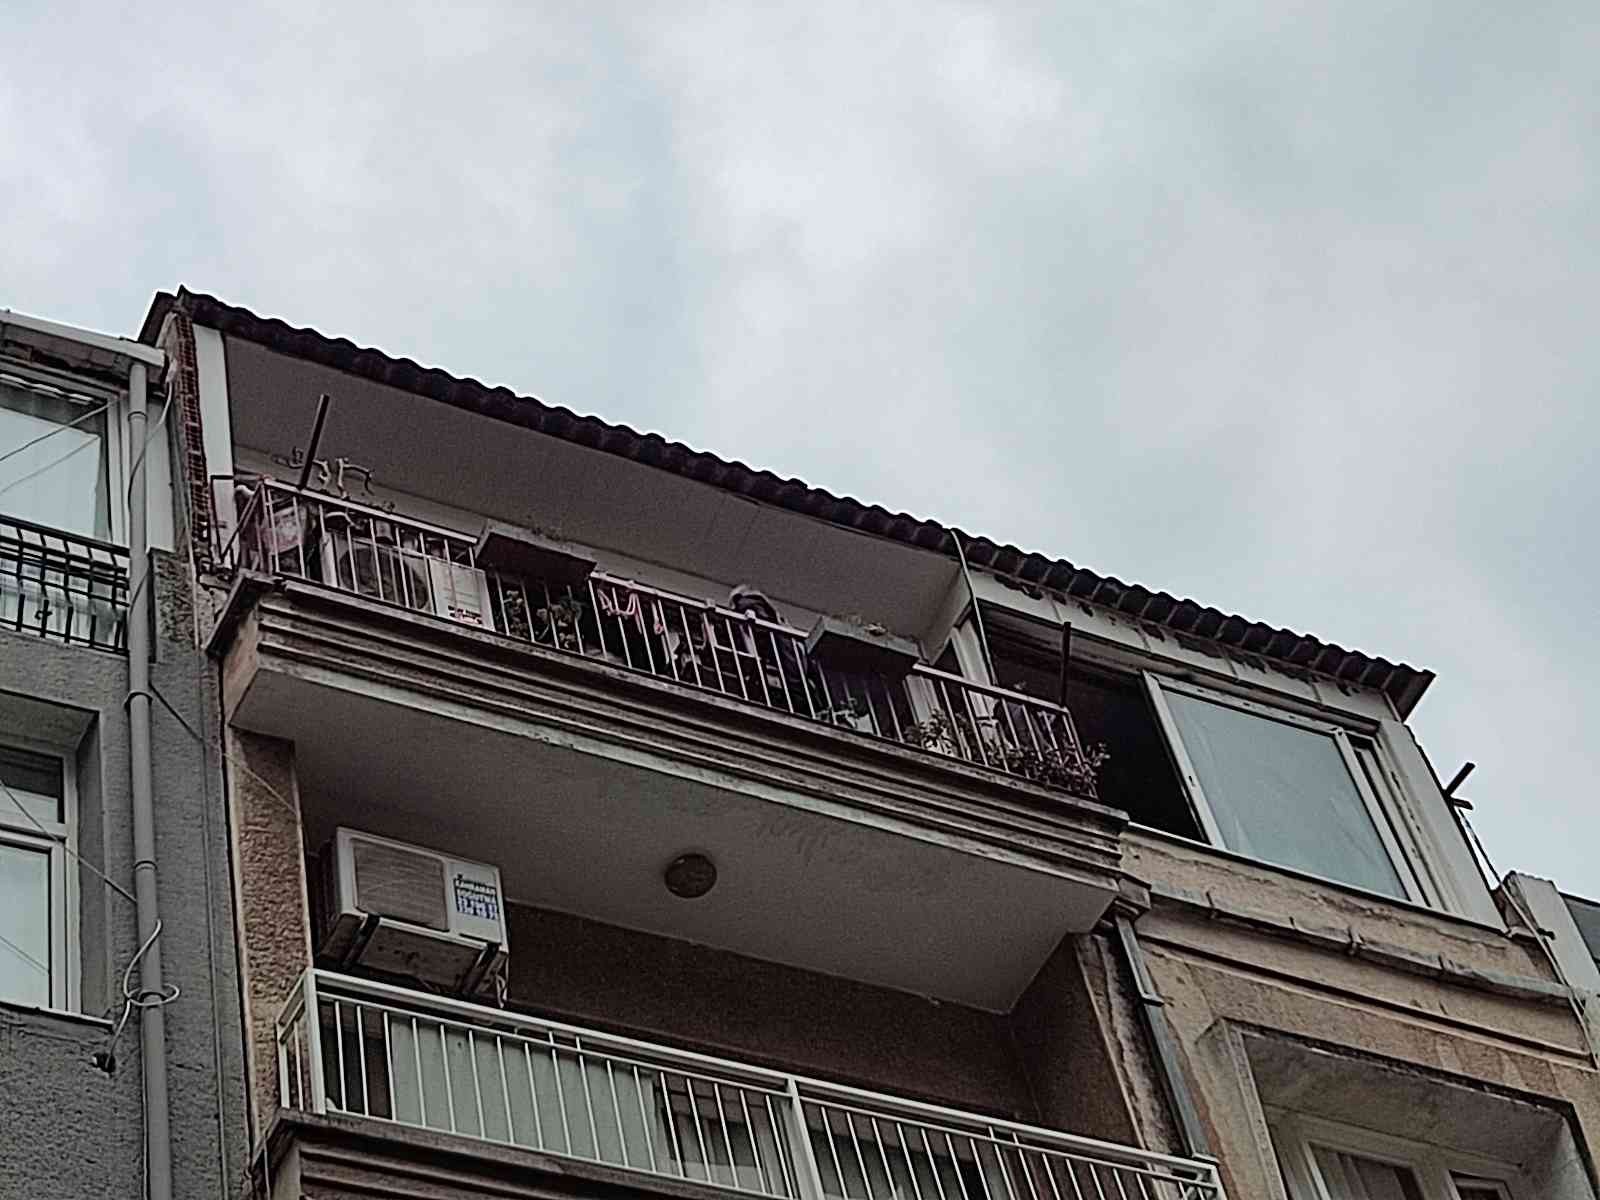 İzmir’de 4 katlı binada yangın paniği #izmir